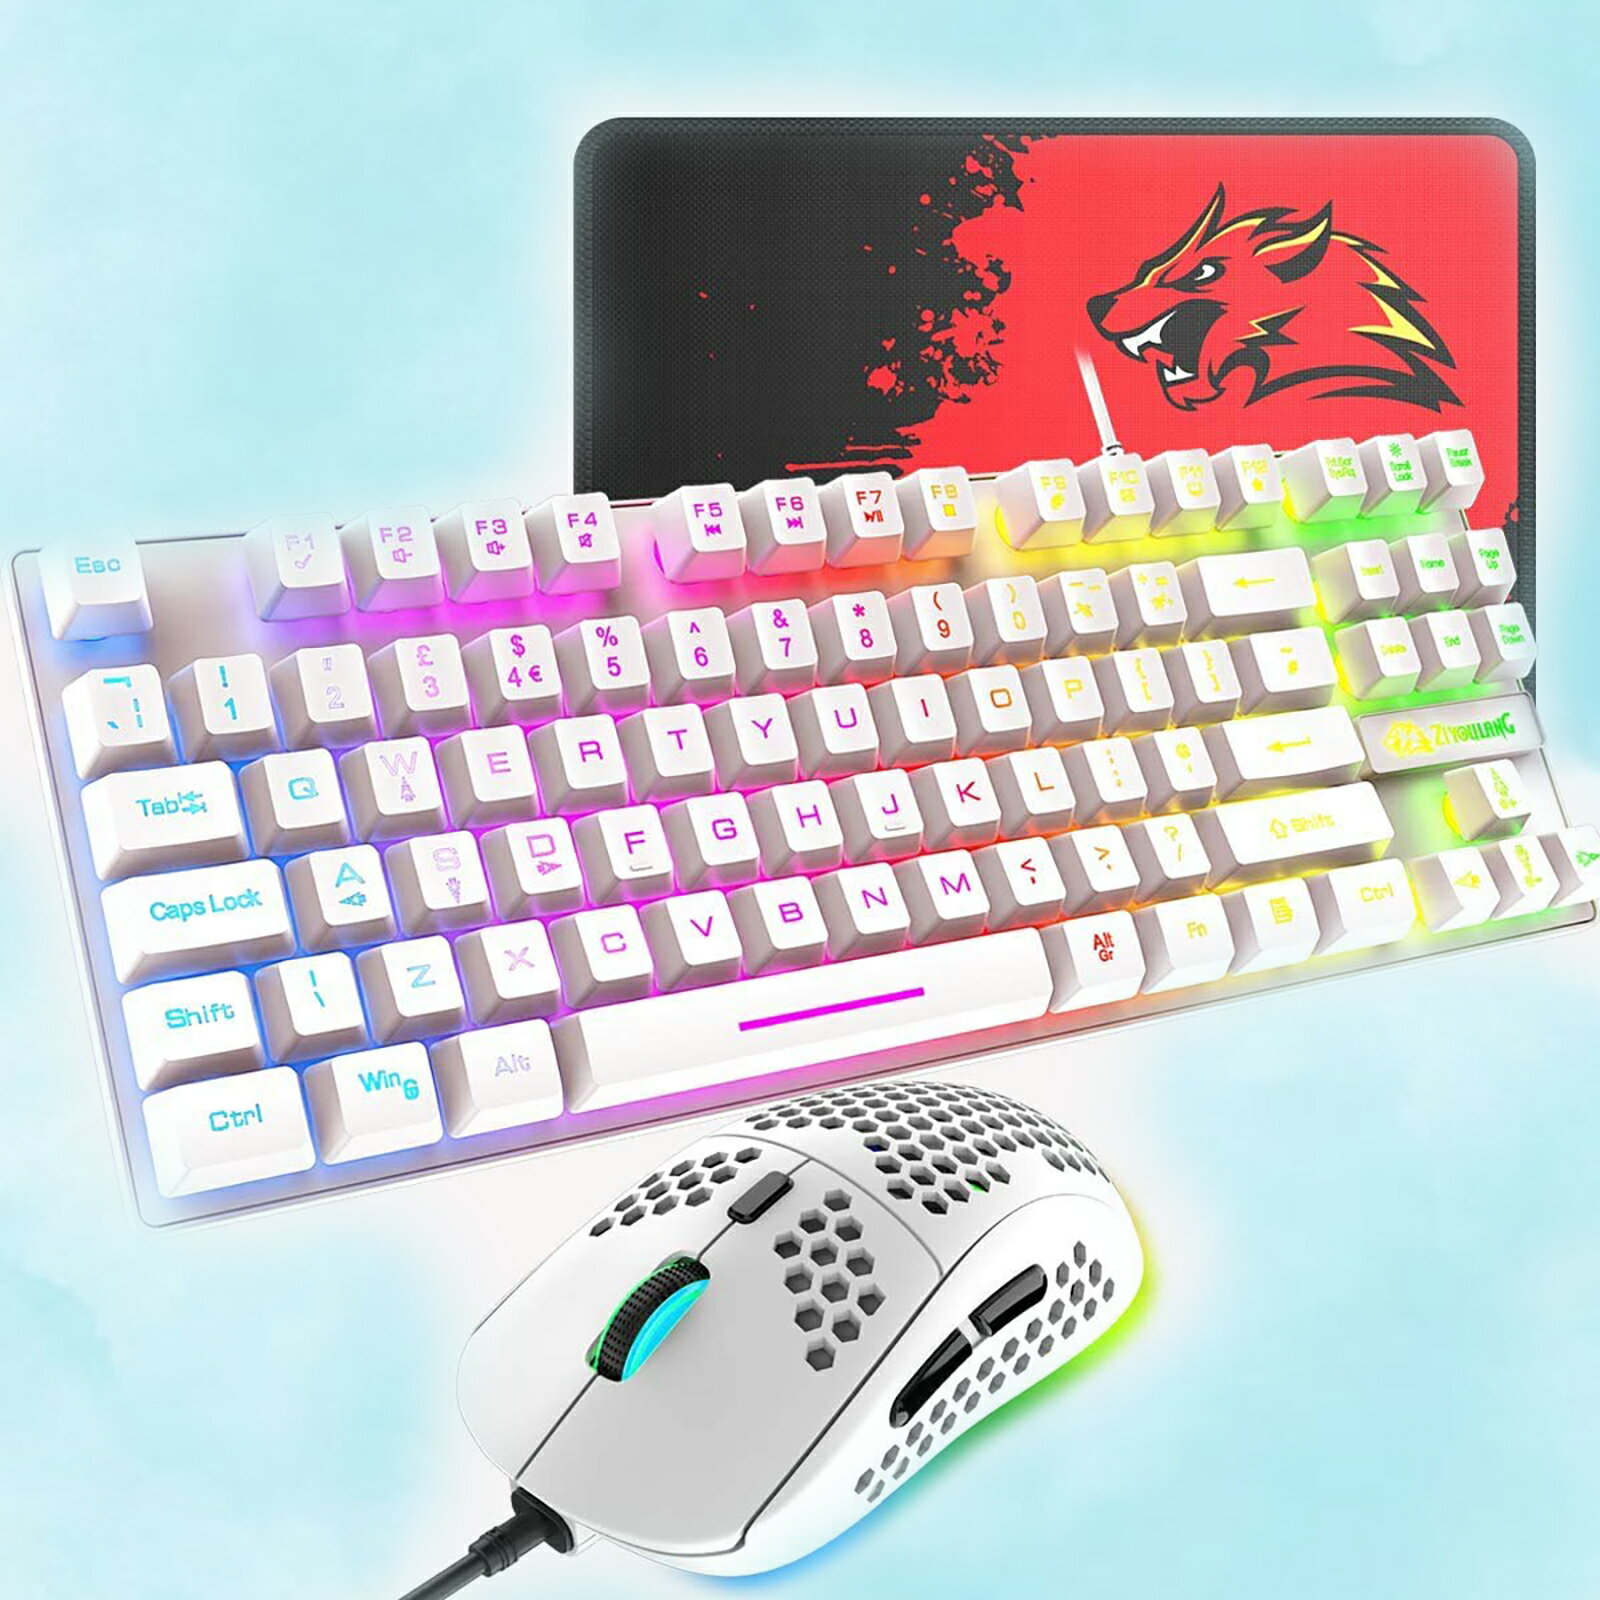 【送料無料】ゲーミングキーボード マウス マウスパット セット 88キー 軽量 LEDバックライト USB接続 エルゴノミック 防水 完全なアンチゴーストボタン キーキャップ取り外し可能、ゲーマーやタイピストに最適、6400DPIゲーミングマウス PC PS4 スイッチ対応 ブラック